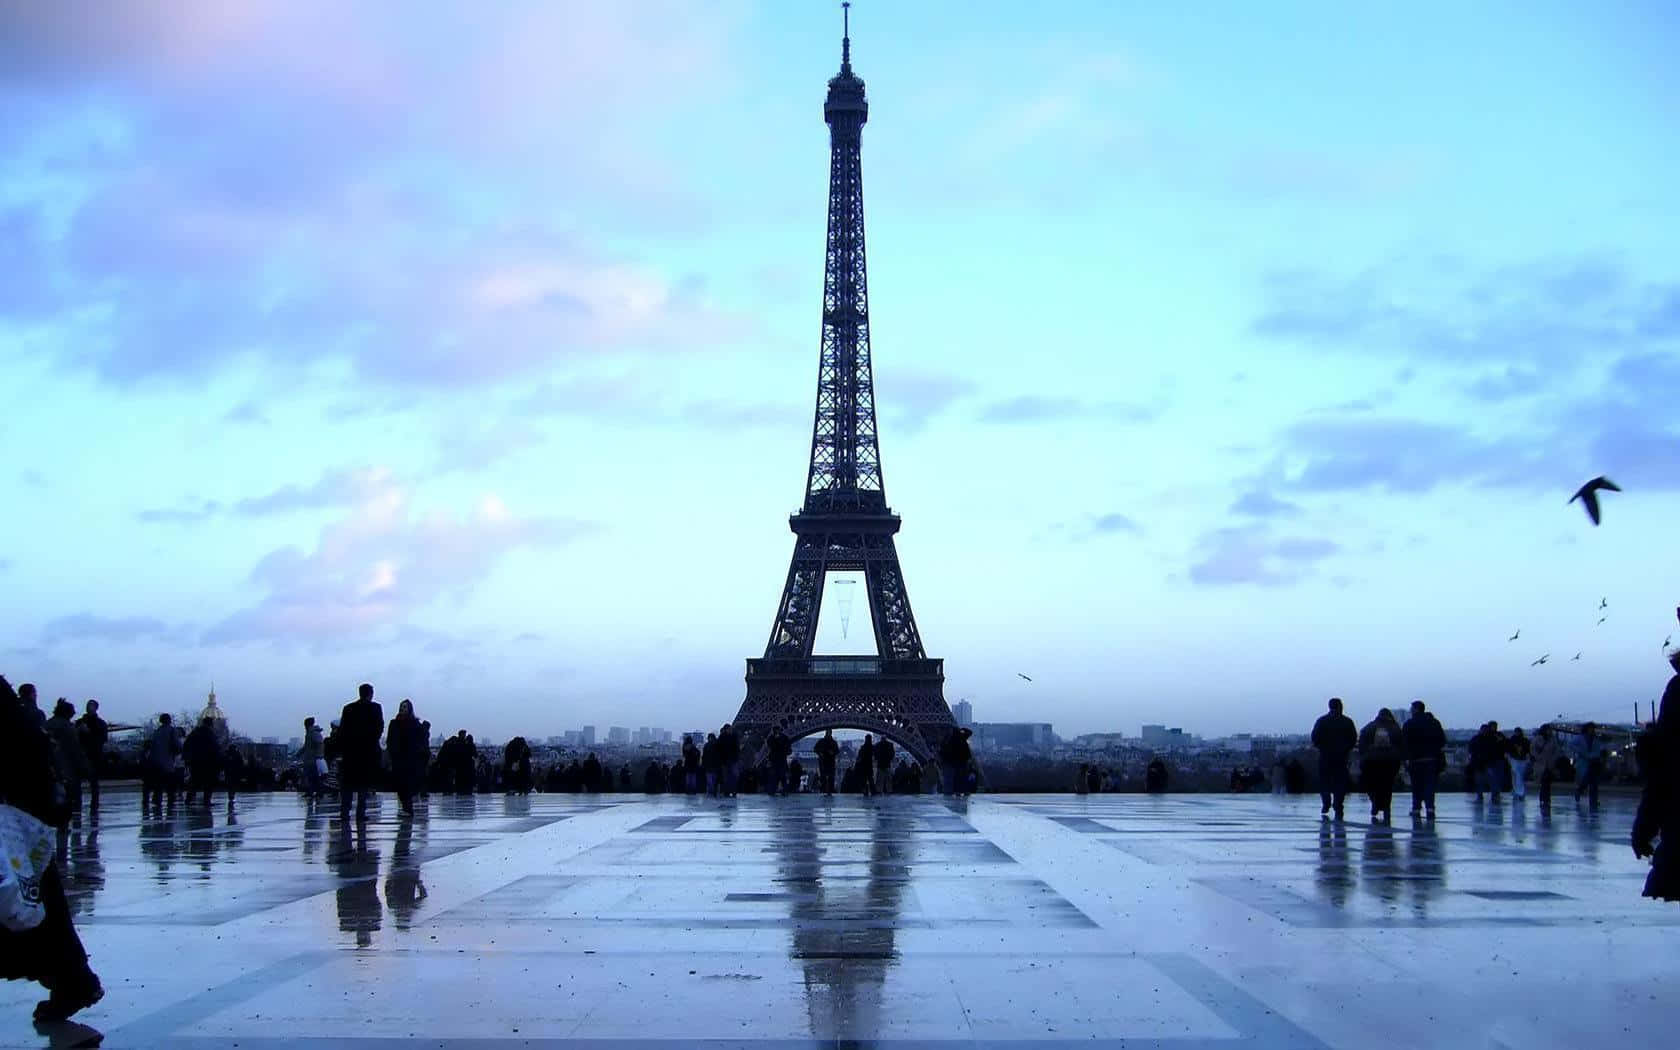 Siénteteenvuelto En La Atmosfera Romántica De La Torre Eiffel, El Emblemático Hito Parisino.